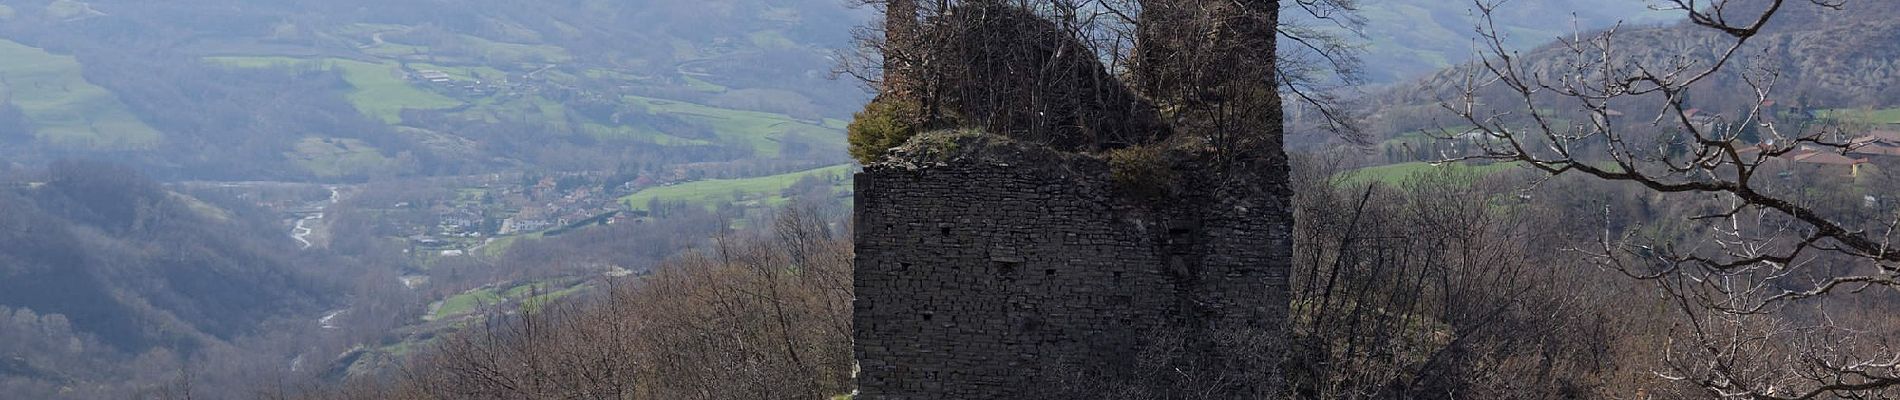 Excursión A pie Bardi - Percorso 803 - Lavacchielli - Cerreto - Bre' - Pieve di Gravago - Brugnola - Monte Disperata - Photo